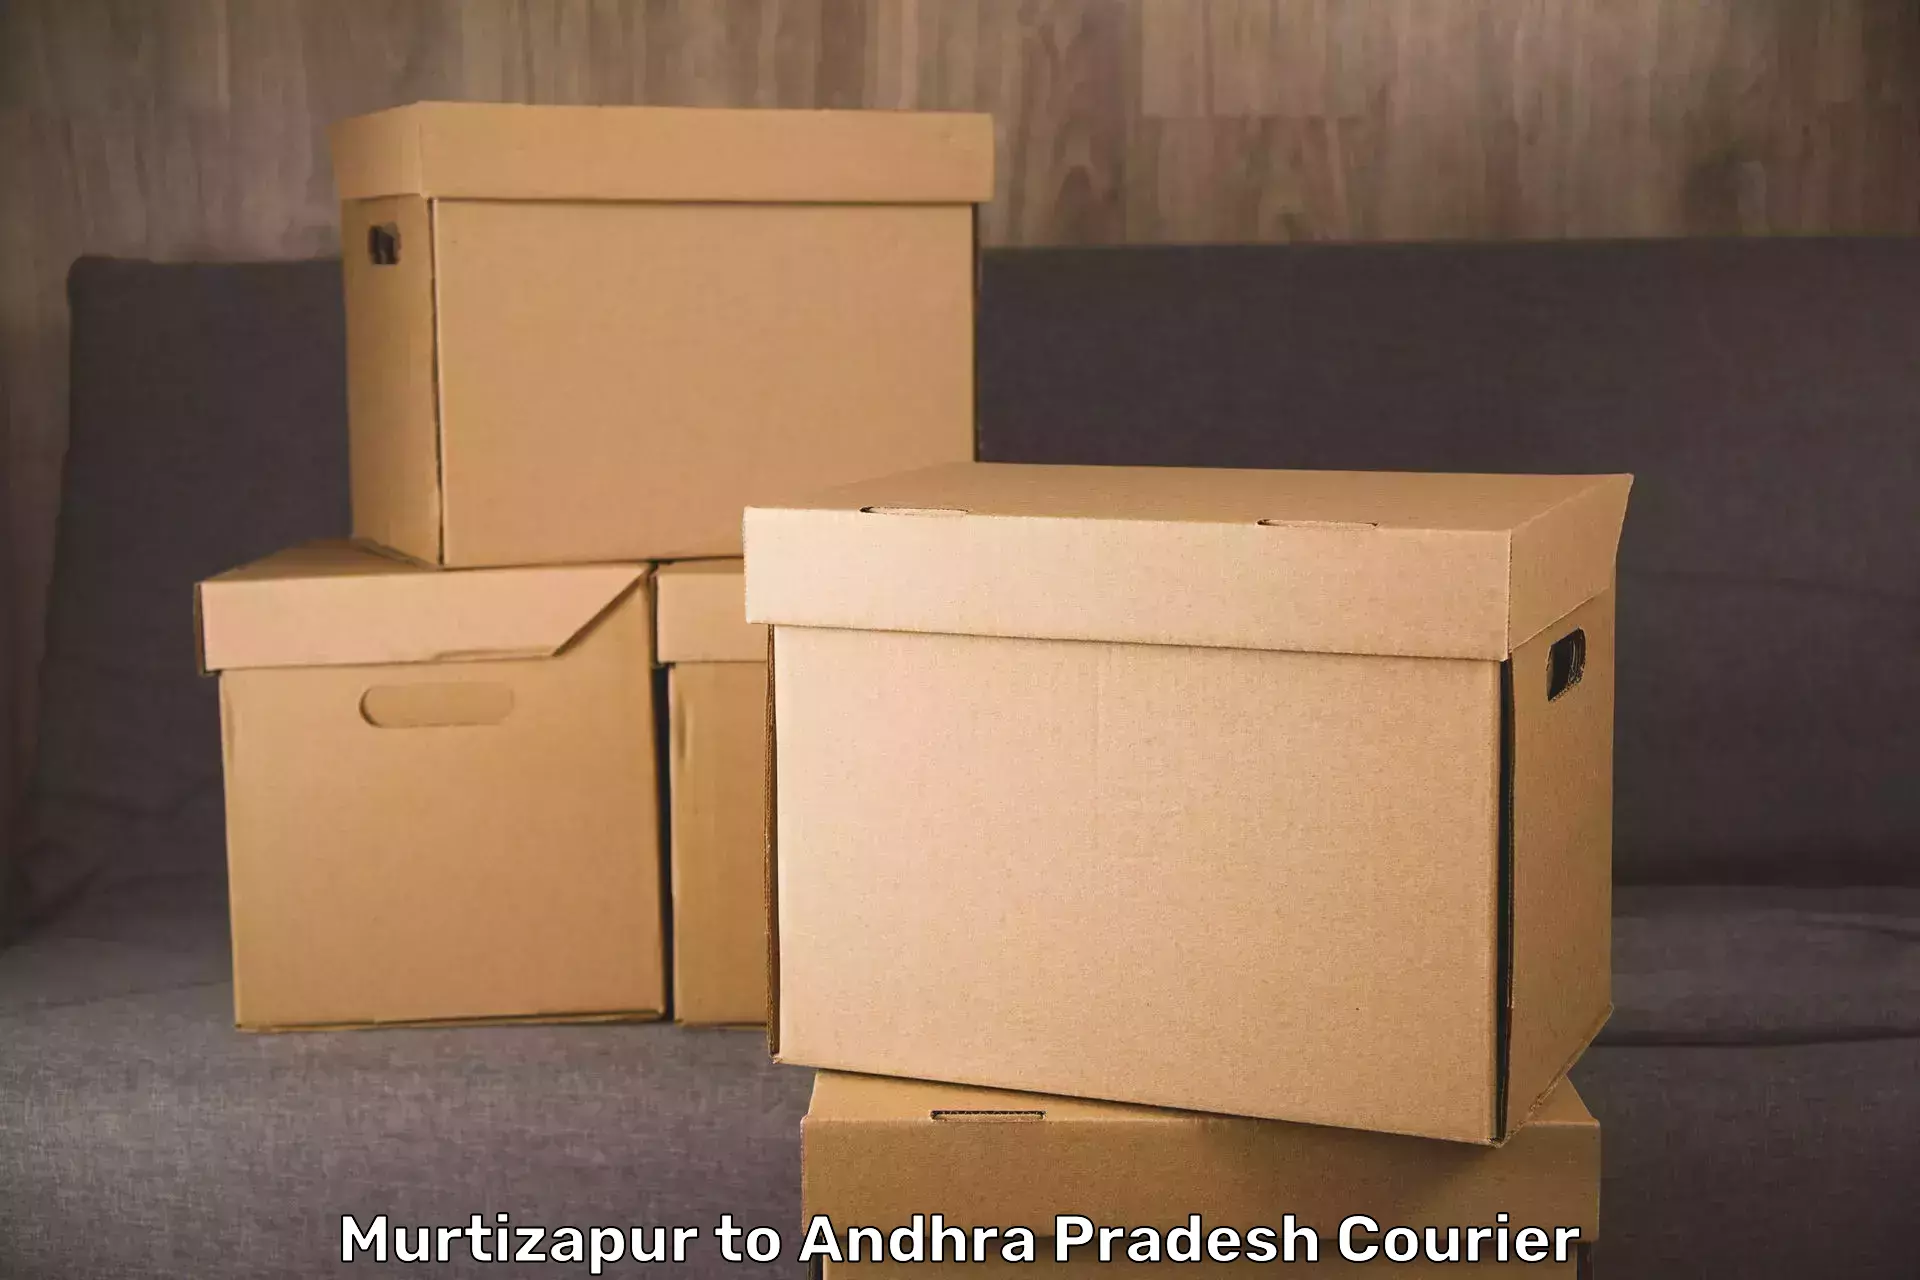 Luggage transport company Murtizapur to Pamuru